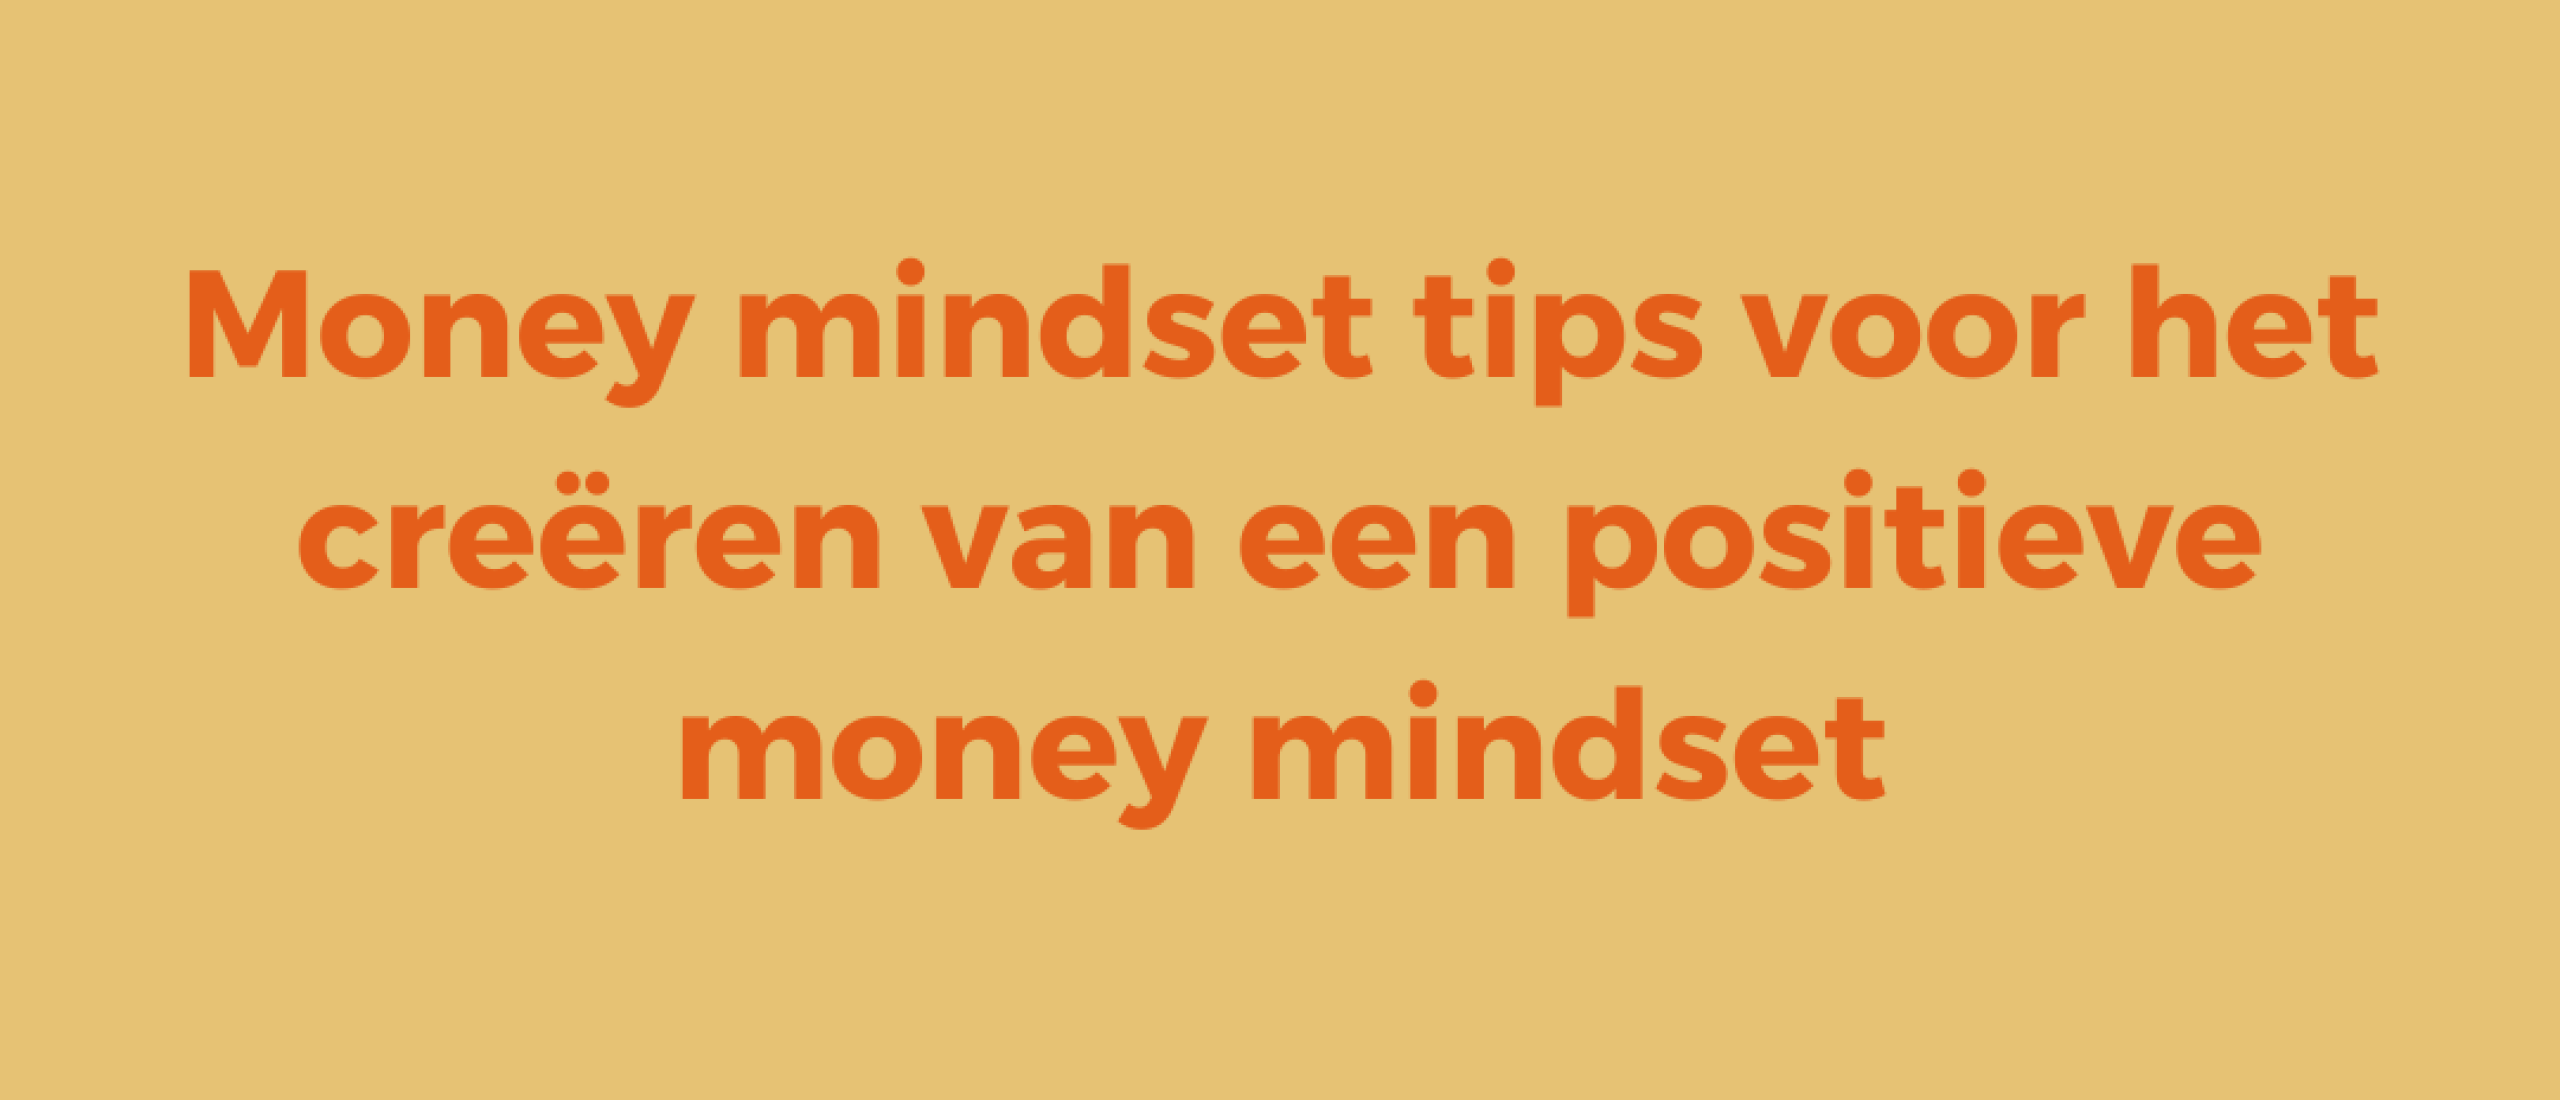 Money mindset tips voor het creëren van een positieve money mindset